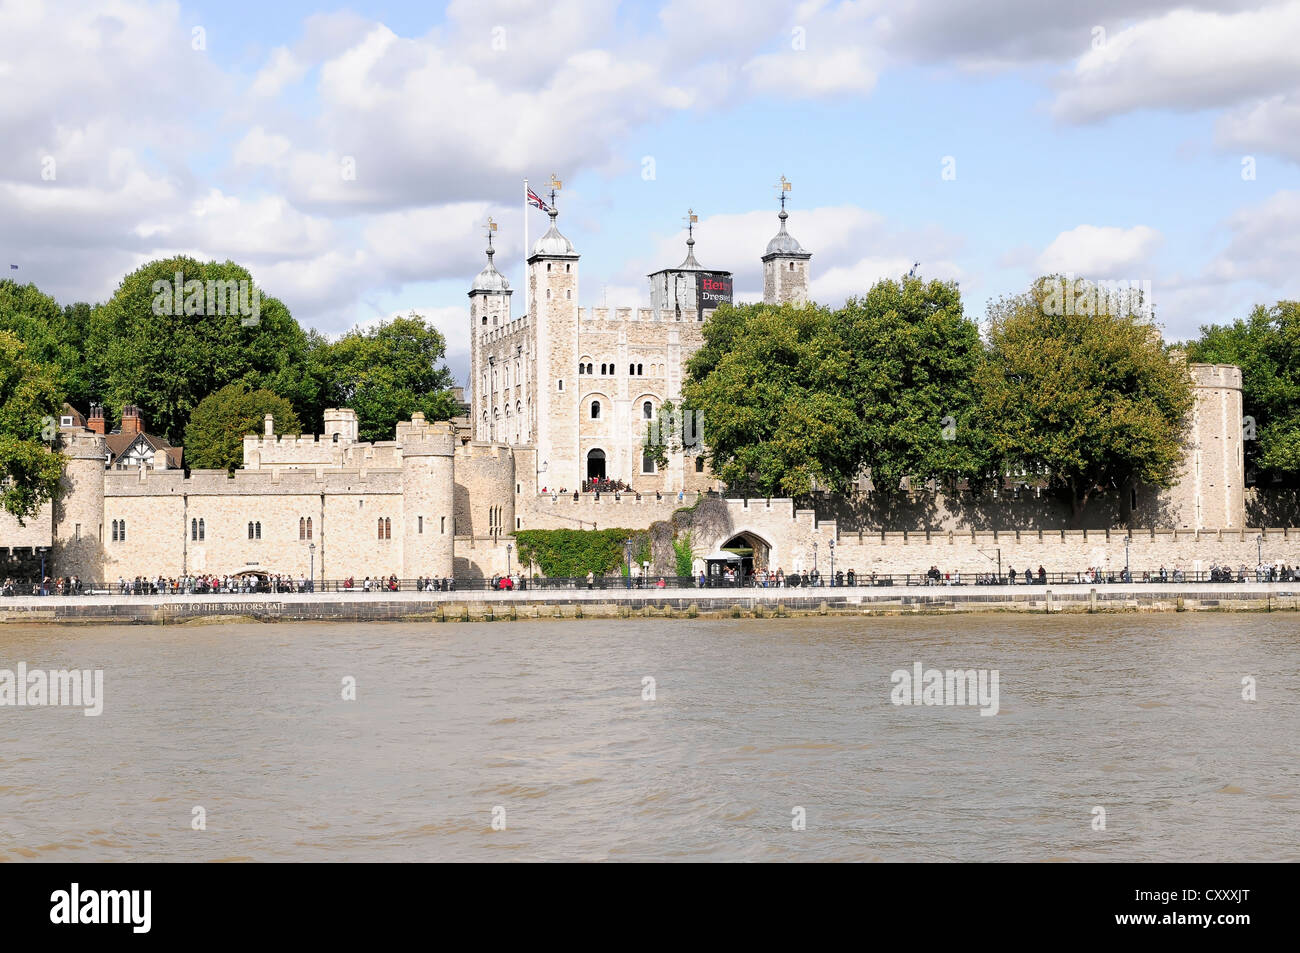 La Torre di Londra Waterloo caserma con i gioielli della Corona, dichiarato patrimonio culturale mondiale dall'UNESCO, il palazzo, la prigione Foto Stock